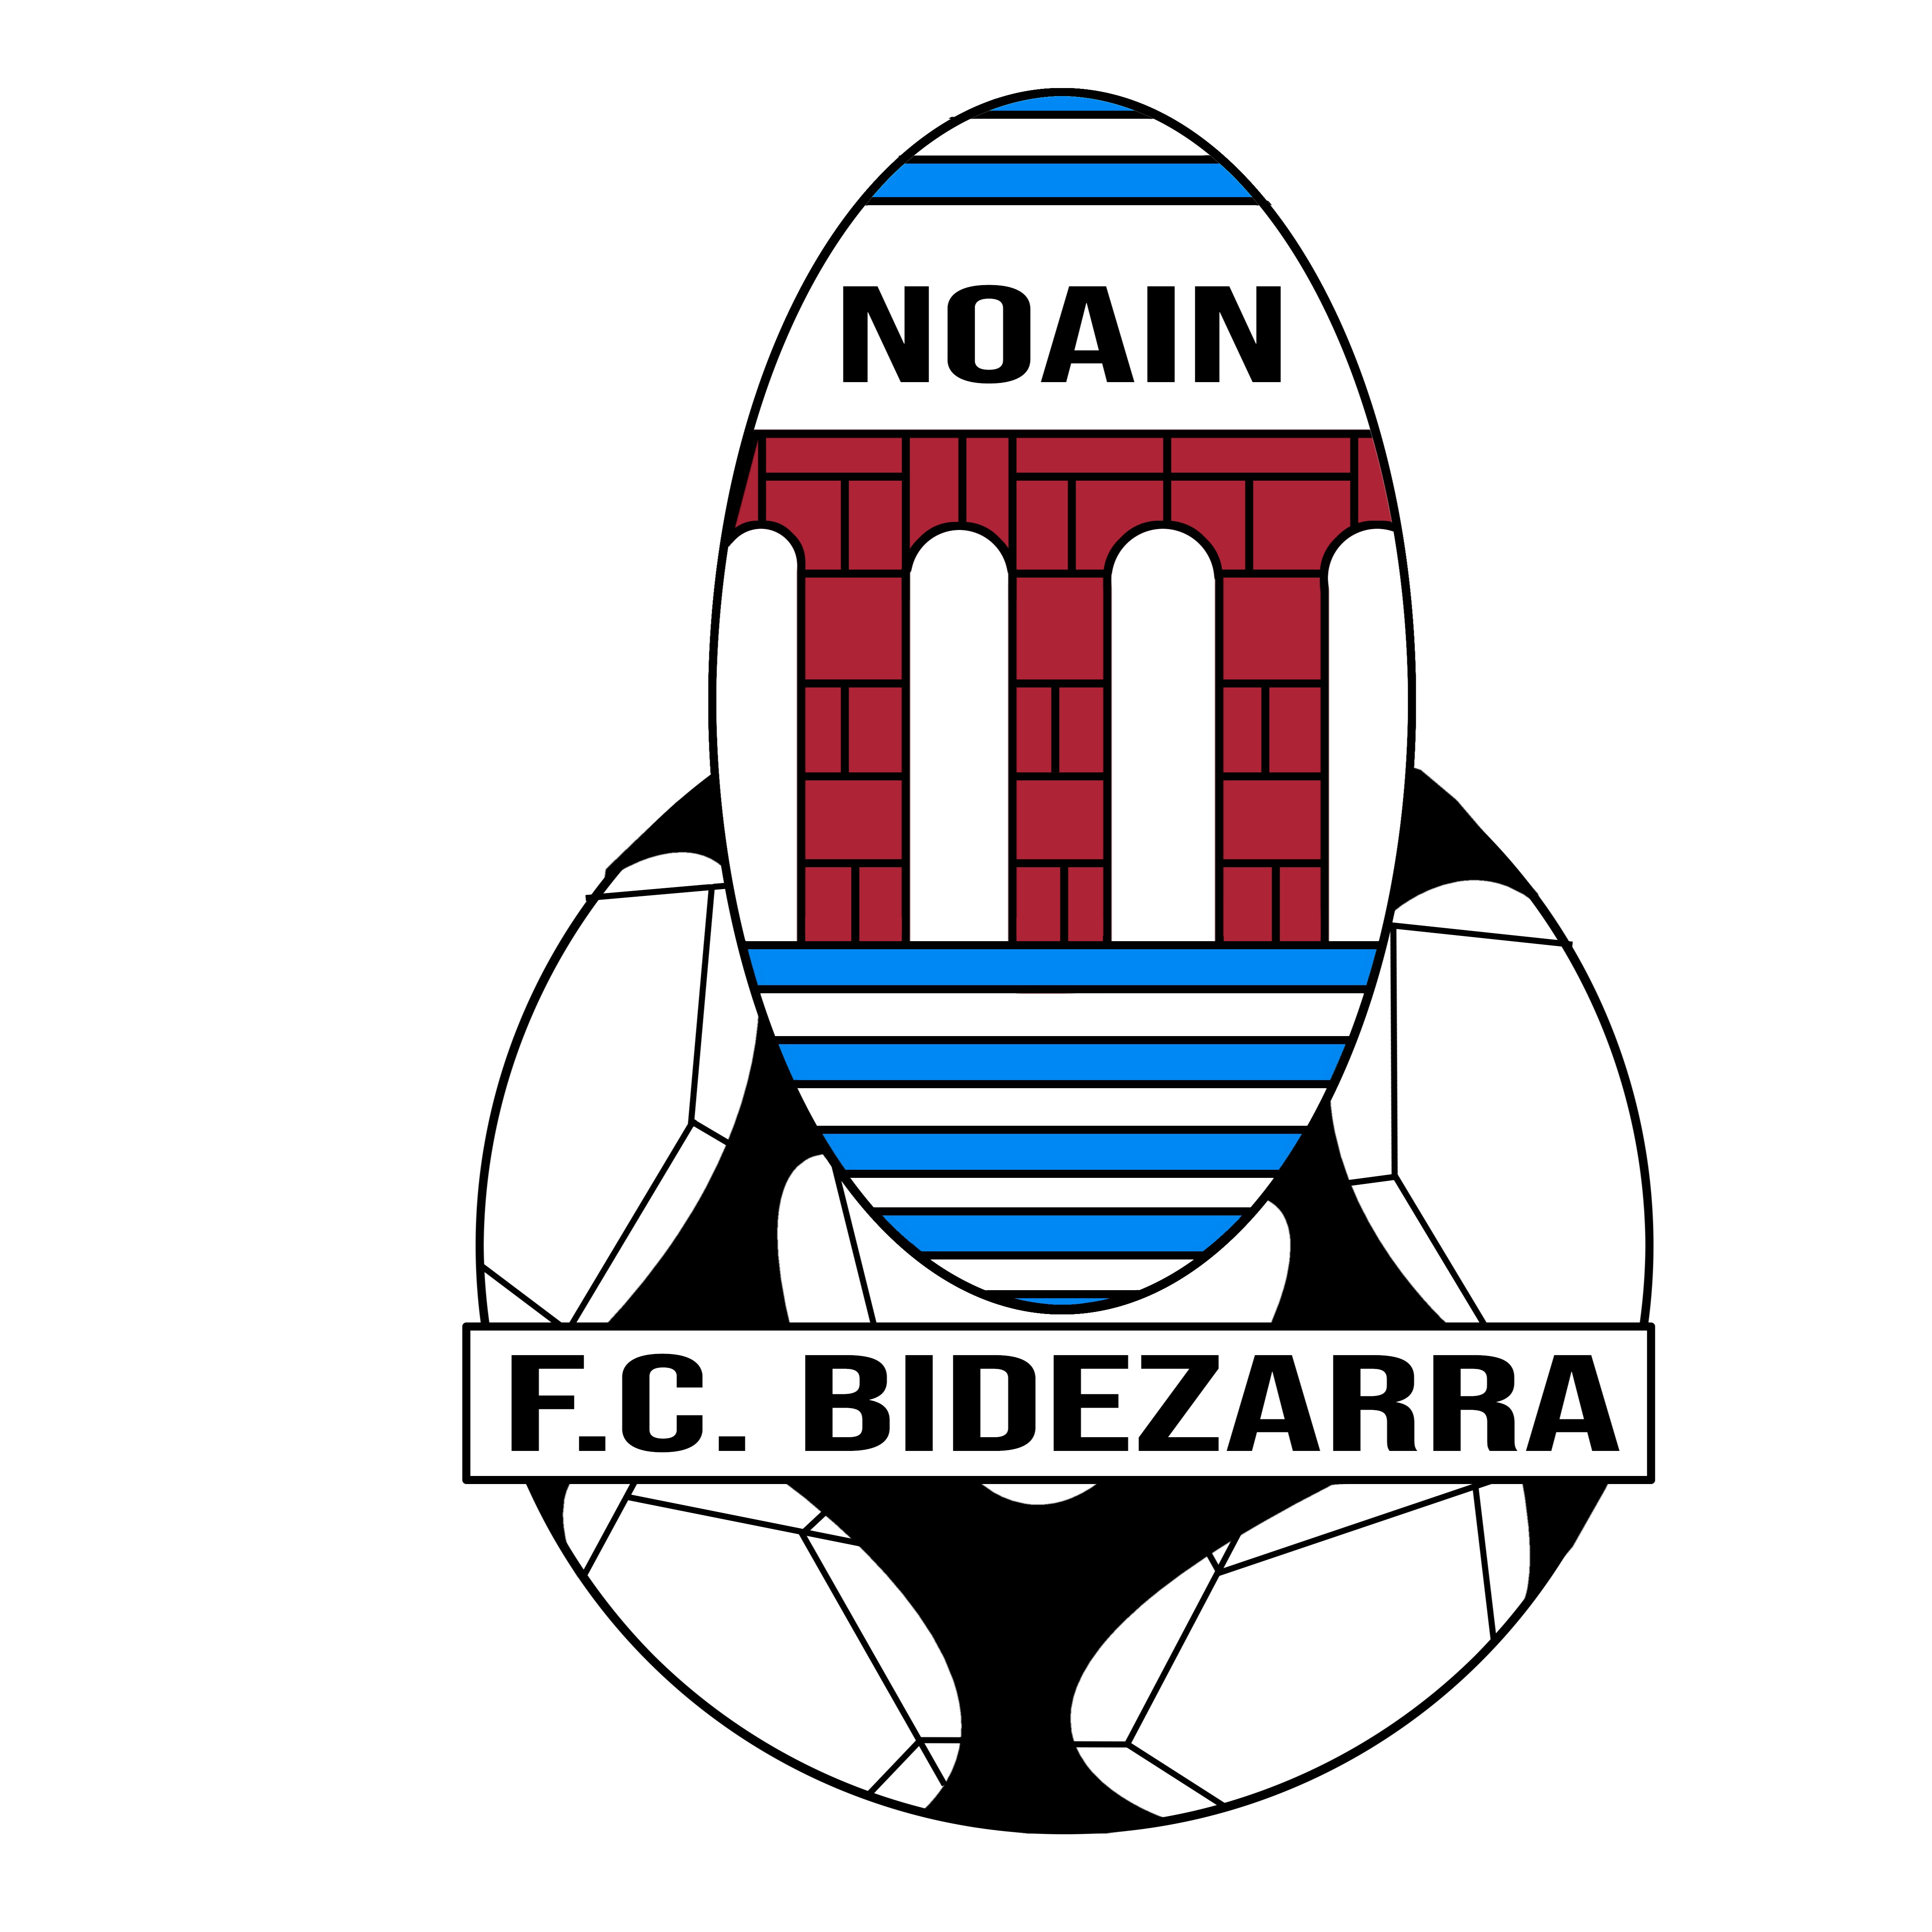 Bidezarra